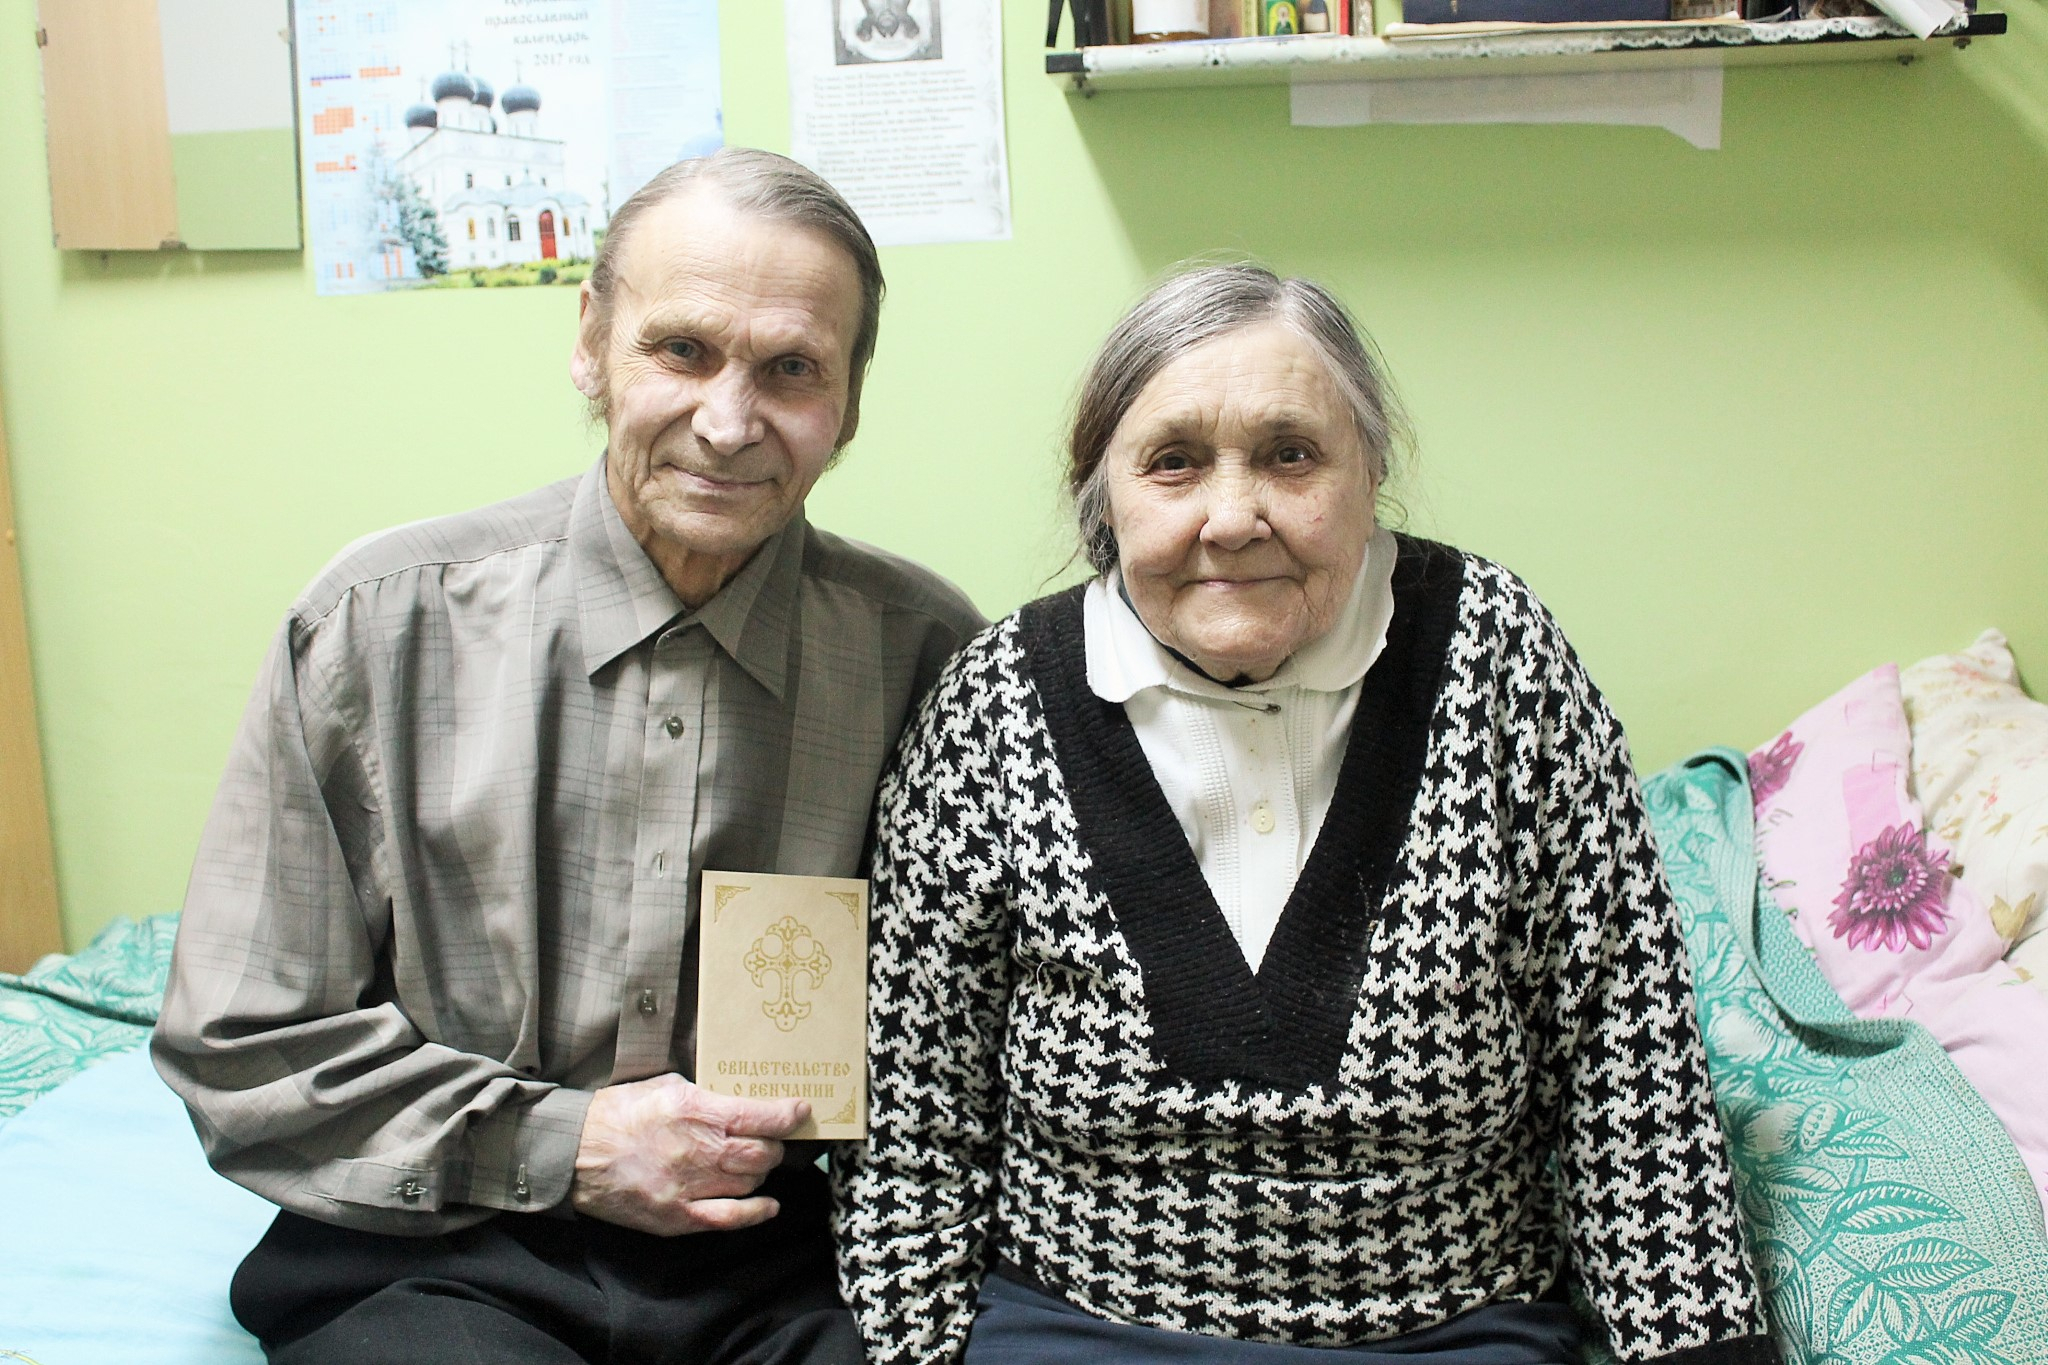 Супруги нашлись в чепецком интернате спустя 40 лет после первой встречи